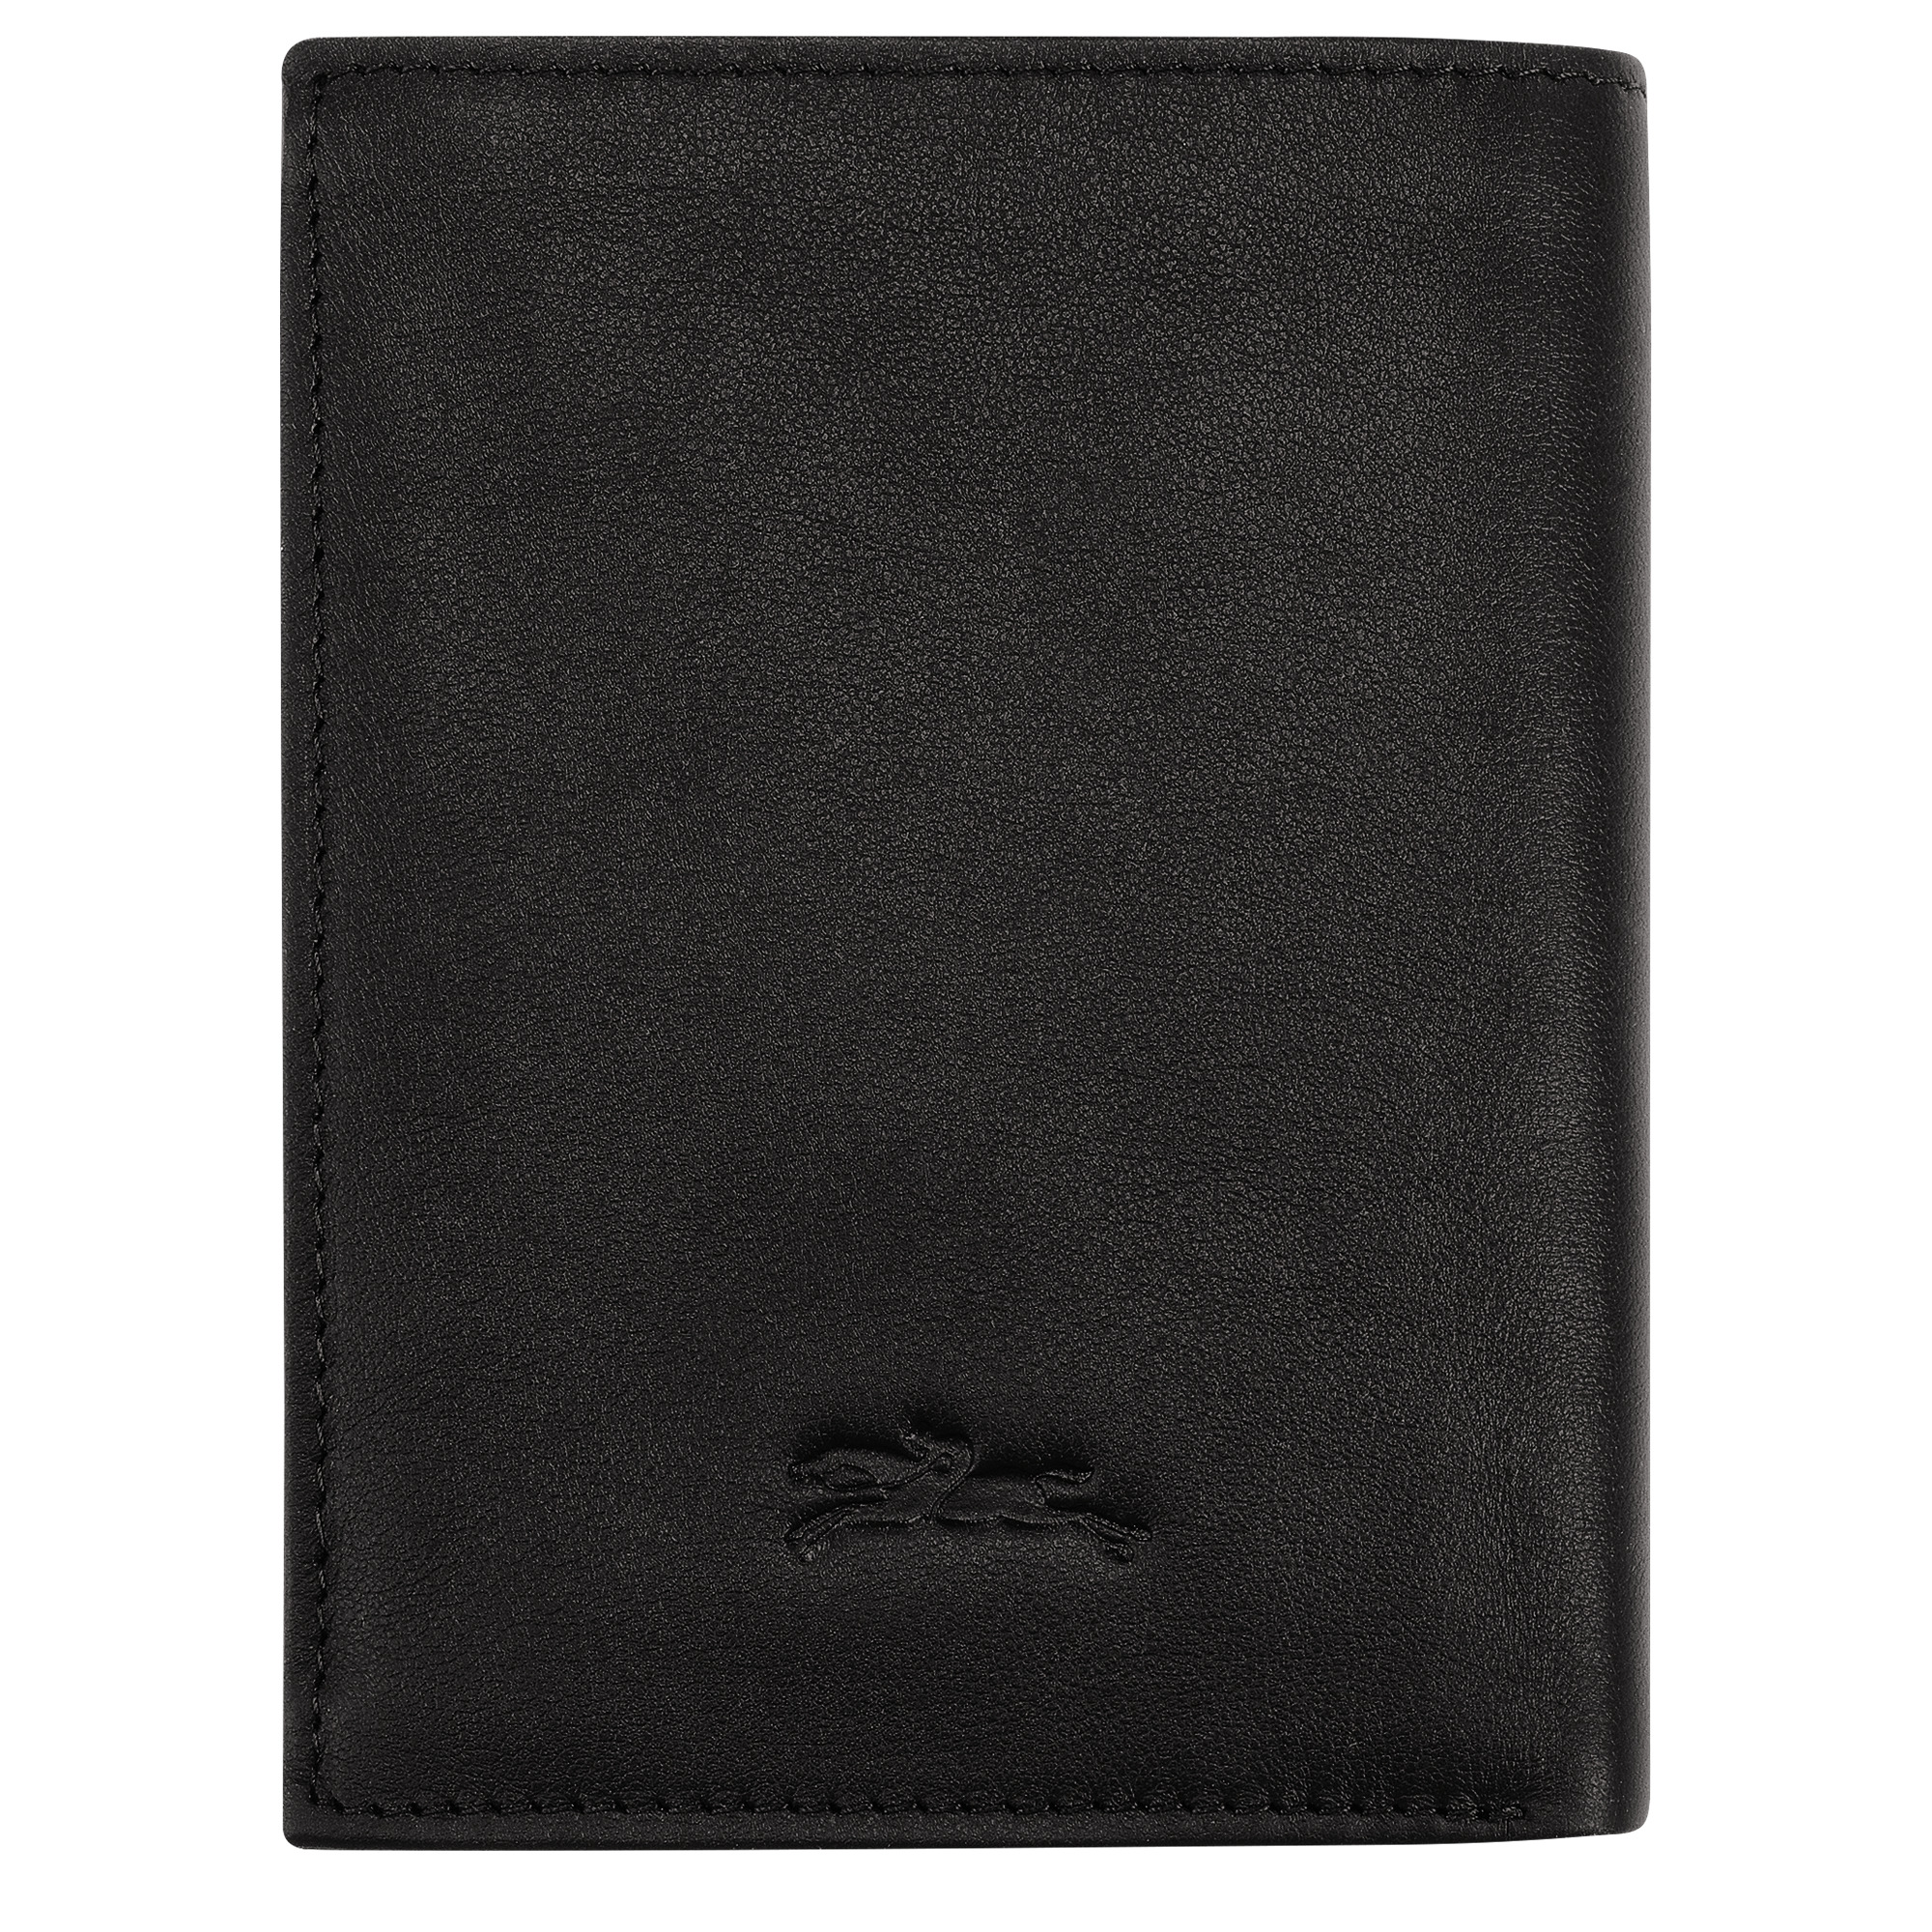 Longchamp sur Seine Wallet Black - Leather - 2